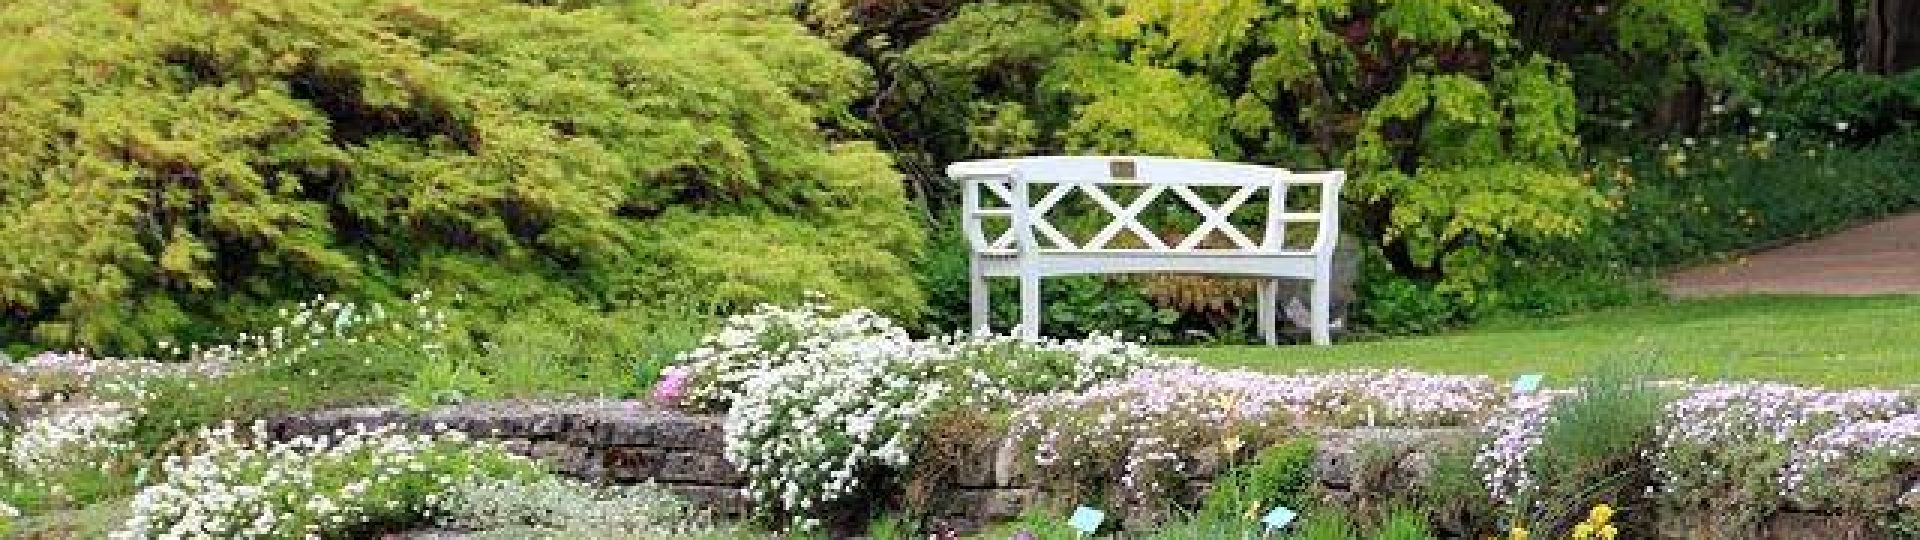 White Bench in Garden